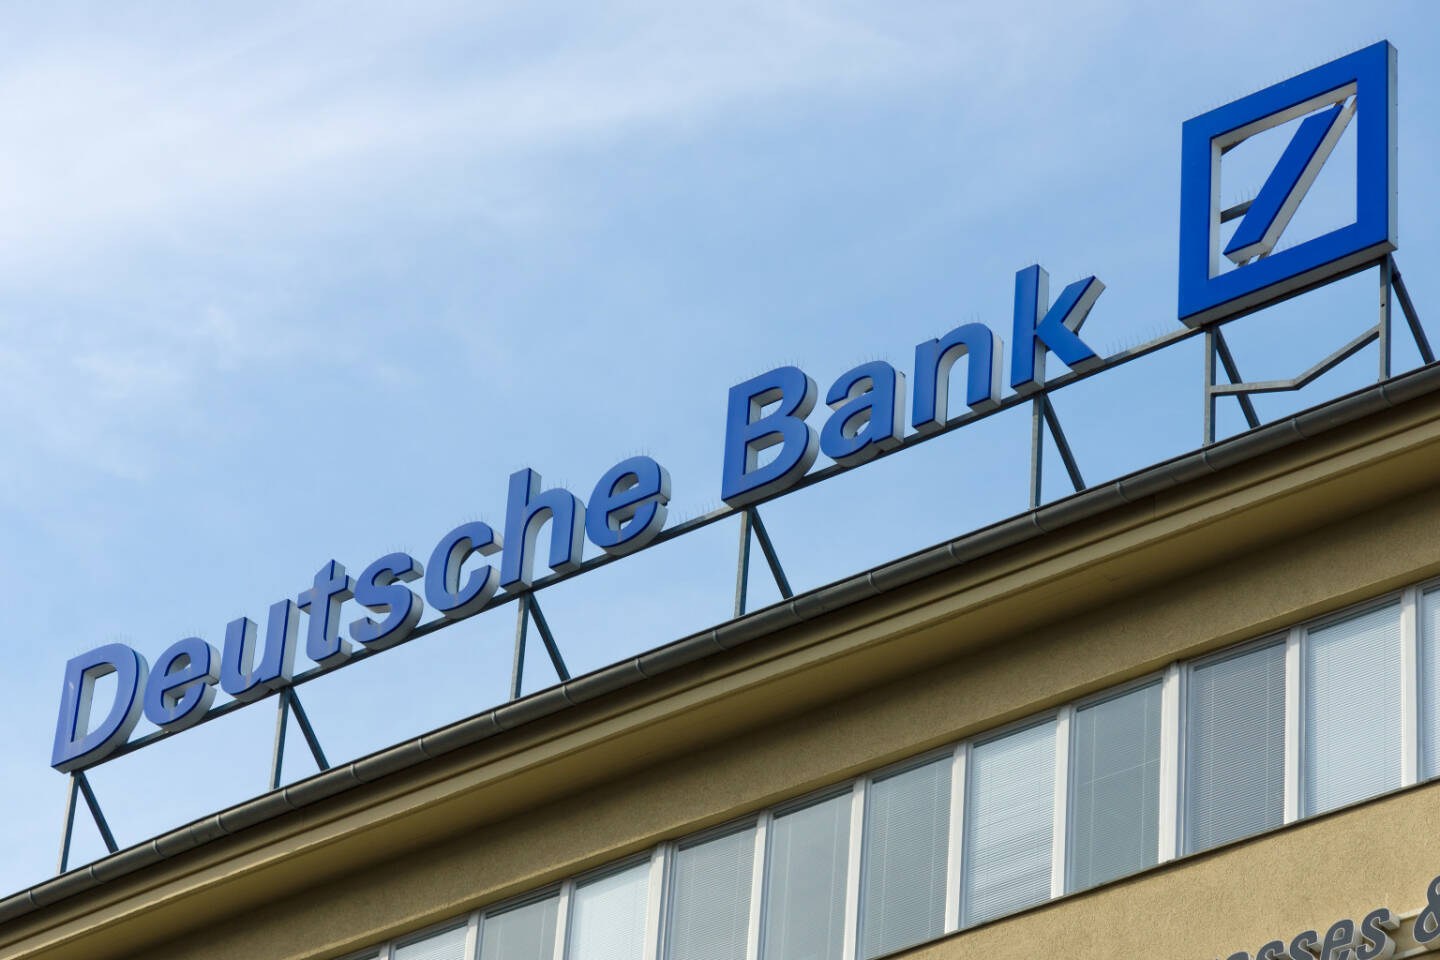 Deutsche Bank, Logo <a href=http://www.shutterstock.com/gallery-472024p1.html?cr=00&pl=edit-00>Bocman1973</a> / <a href=http://www.shutterstock.com/editorial?cr=00&pl=edit-00>Shutterstock.com</a>